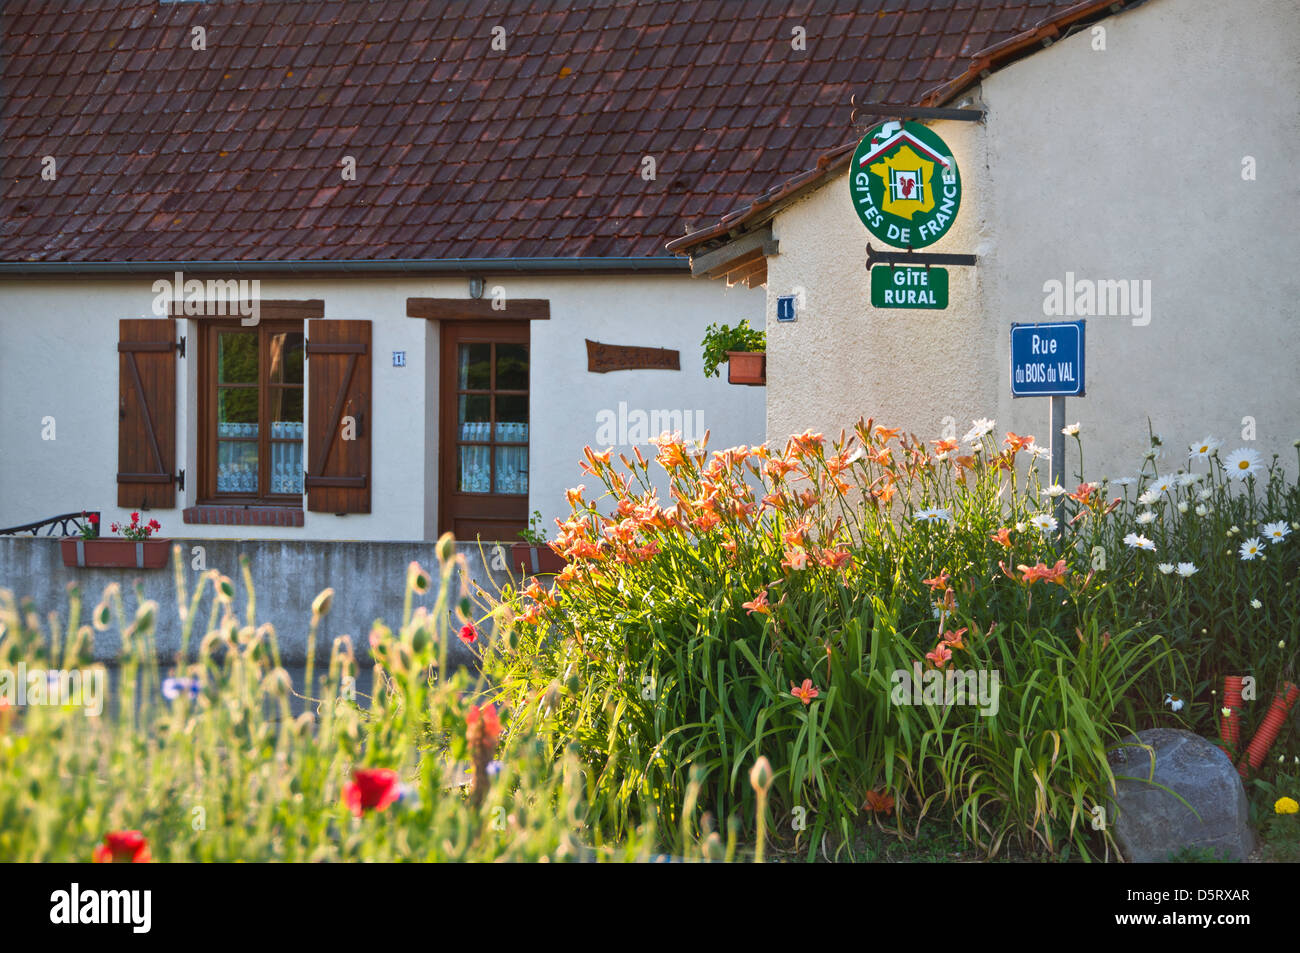 Gite Rural Französisch B & B-Zeichen für Bed and Breakfast Unterkünfte auf Cottage im sonnigen blumigen französische Landschaft Dorf Frankreich Stockfoto